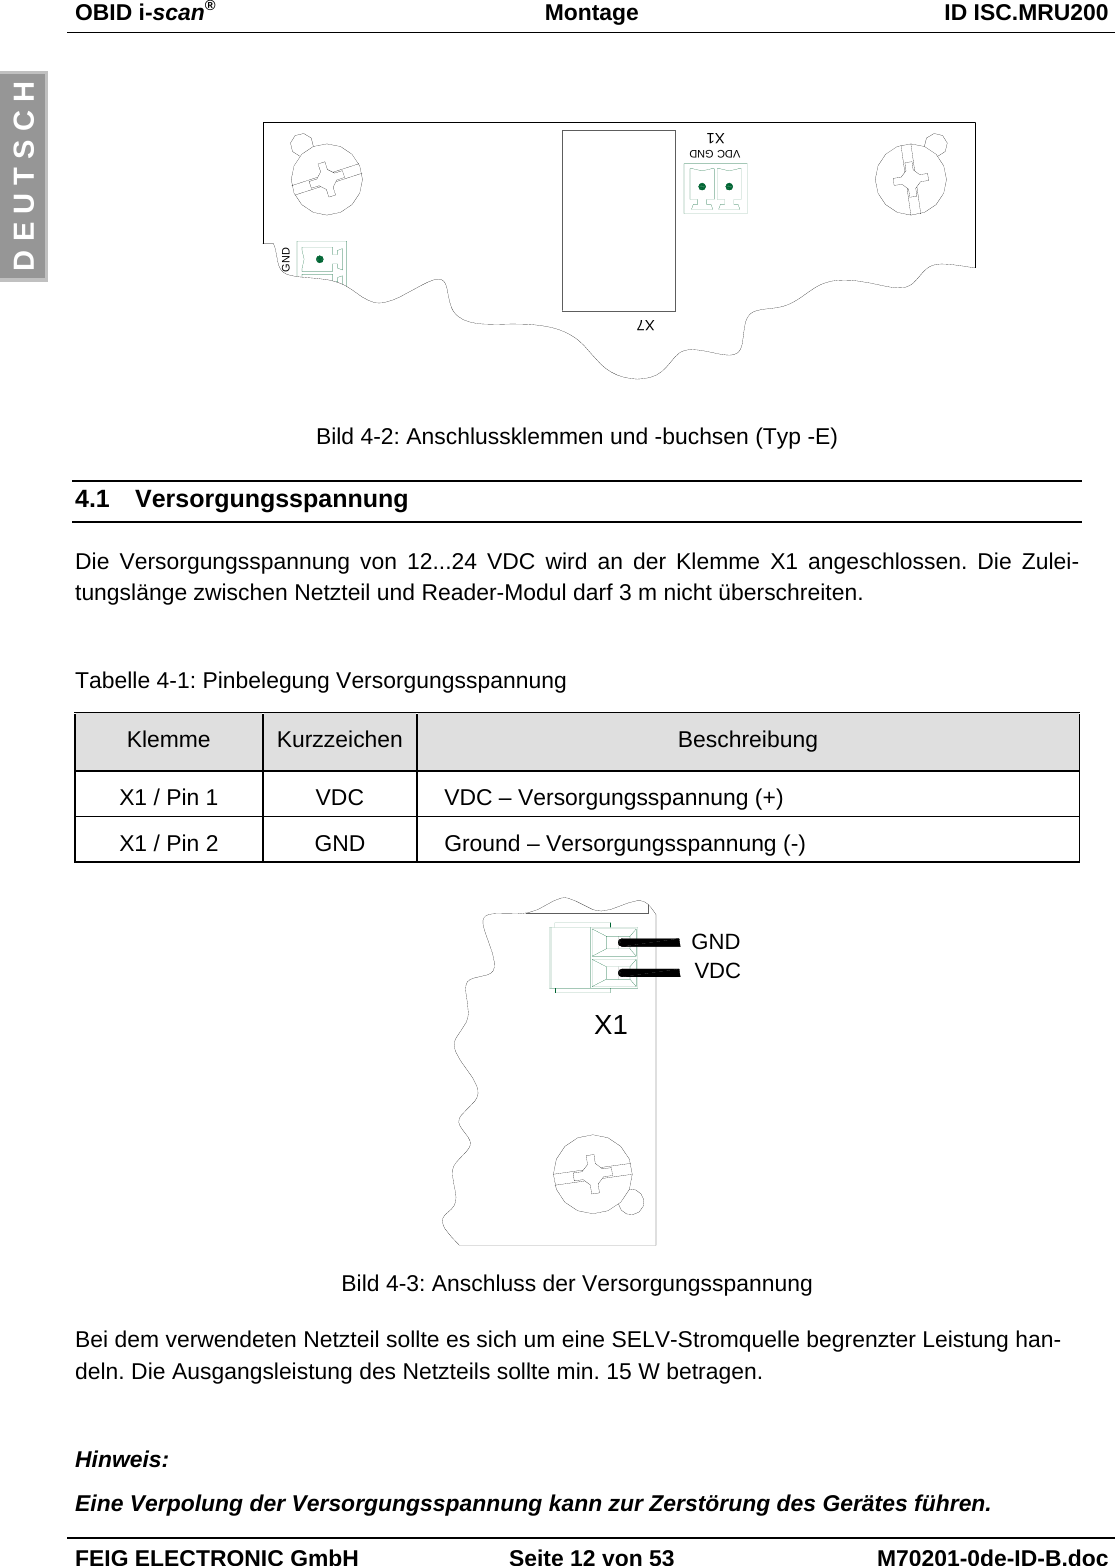 OBID i-scan®Montage ID ISC.MRU200FEIG ELECTRONIC GmbH Seite 12 von 53 M70201-0de-ID-B.docD E U T S C HBild 4-2: Anschlussklemmen und -buchsen (Typ -E)4.1 VersorgungsspannungDie Versorgungsspannung von 12...24 VDC wird an der Klemme X1 angeschlossen. Die Zulei-tungslänge zwischen Netzteil und Reader-Modul darf 3 m nicht überschreiten.Tabelle 4-1: Pinbelegung VersorgungsspannungKlemme Kurzzeichen BeschreibungX1 / Pin 1 VDC VDC – Versorgungsspannung (+)X1 / Pin 2 GND Ground – Versorgungsspannung (-)Bild 4-3: Anschluss der VersorgungsspannungBei dem verwendeten Netzteil sollte es sich um eine SELV-Stromquelle begrenzter Leistung han-deln. Die Ausgangsleistung des Netzteils sollte min. 15 W betragen.Hinweis:Eine Verpolung der Versorgungsspannung kann zur Zerstörung des Gerätes führen.X1VDCGNDGNDX7X1VDC GND